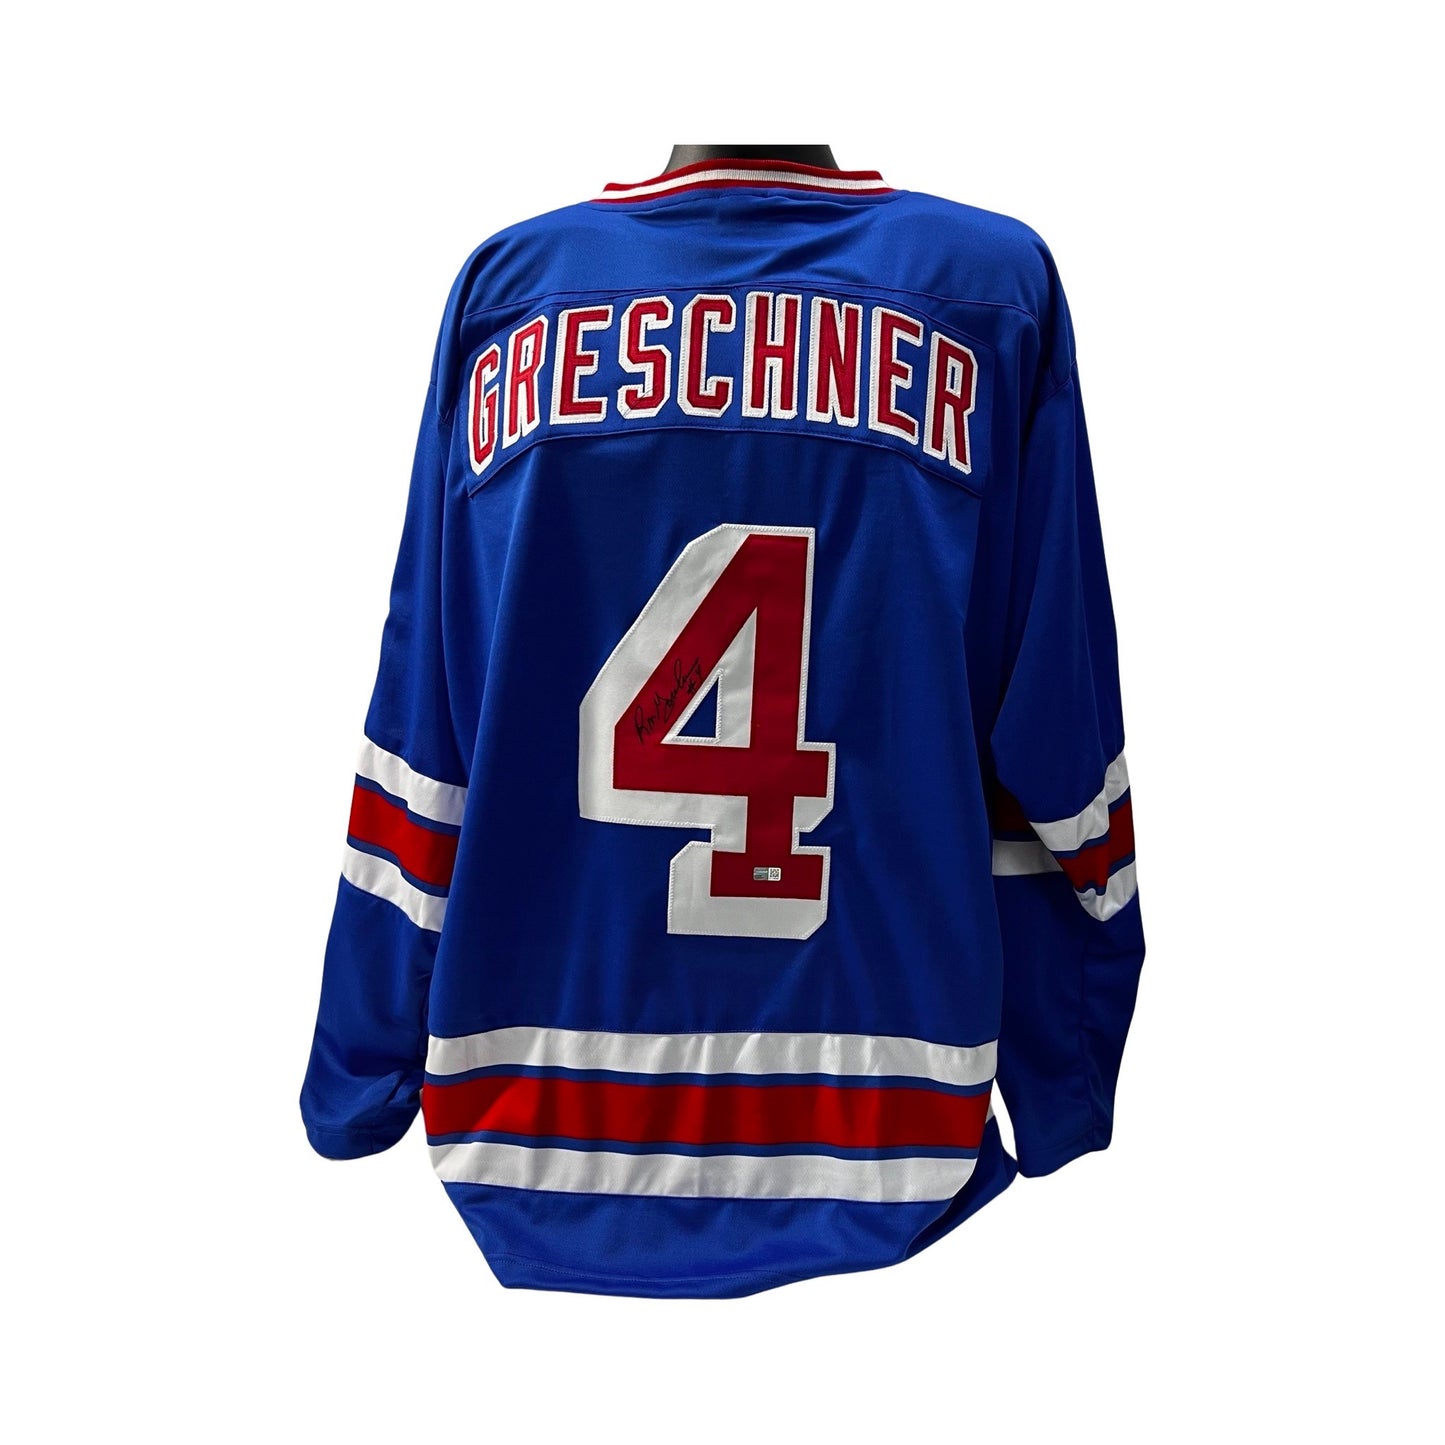 Ron Greschner Autographed New York Rangers Blue Jersey Steiner CX